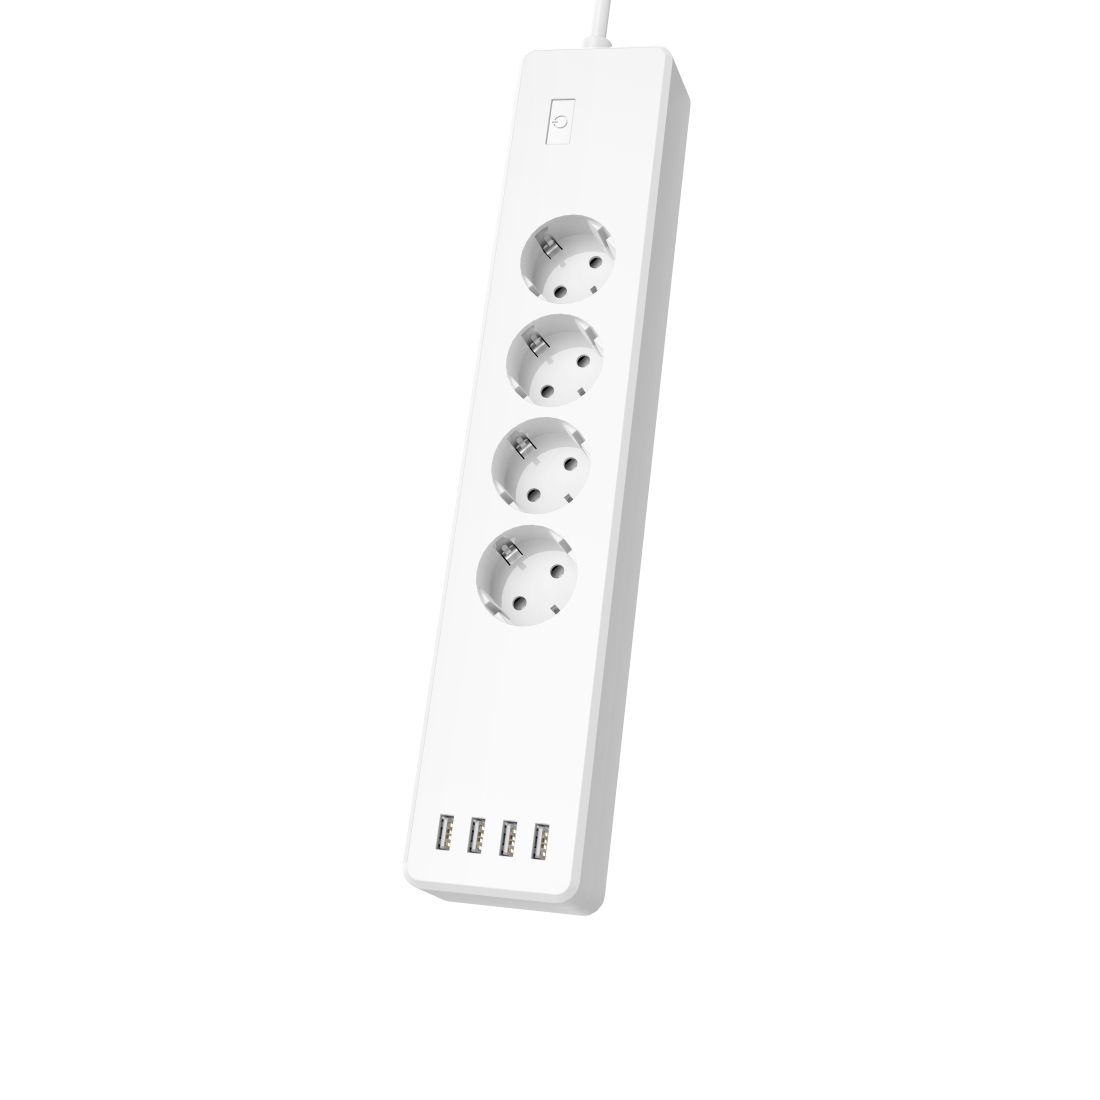 Enchufe WiFi HAMA con protección, 10 A, 4 USB ee 4 shuck, 1,5 mt, blanco - 176574 (176574)